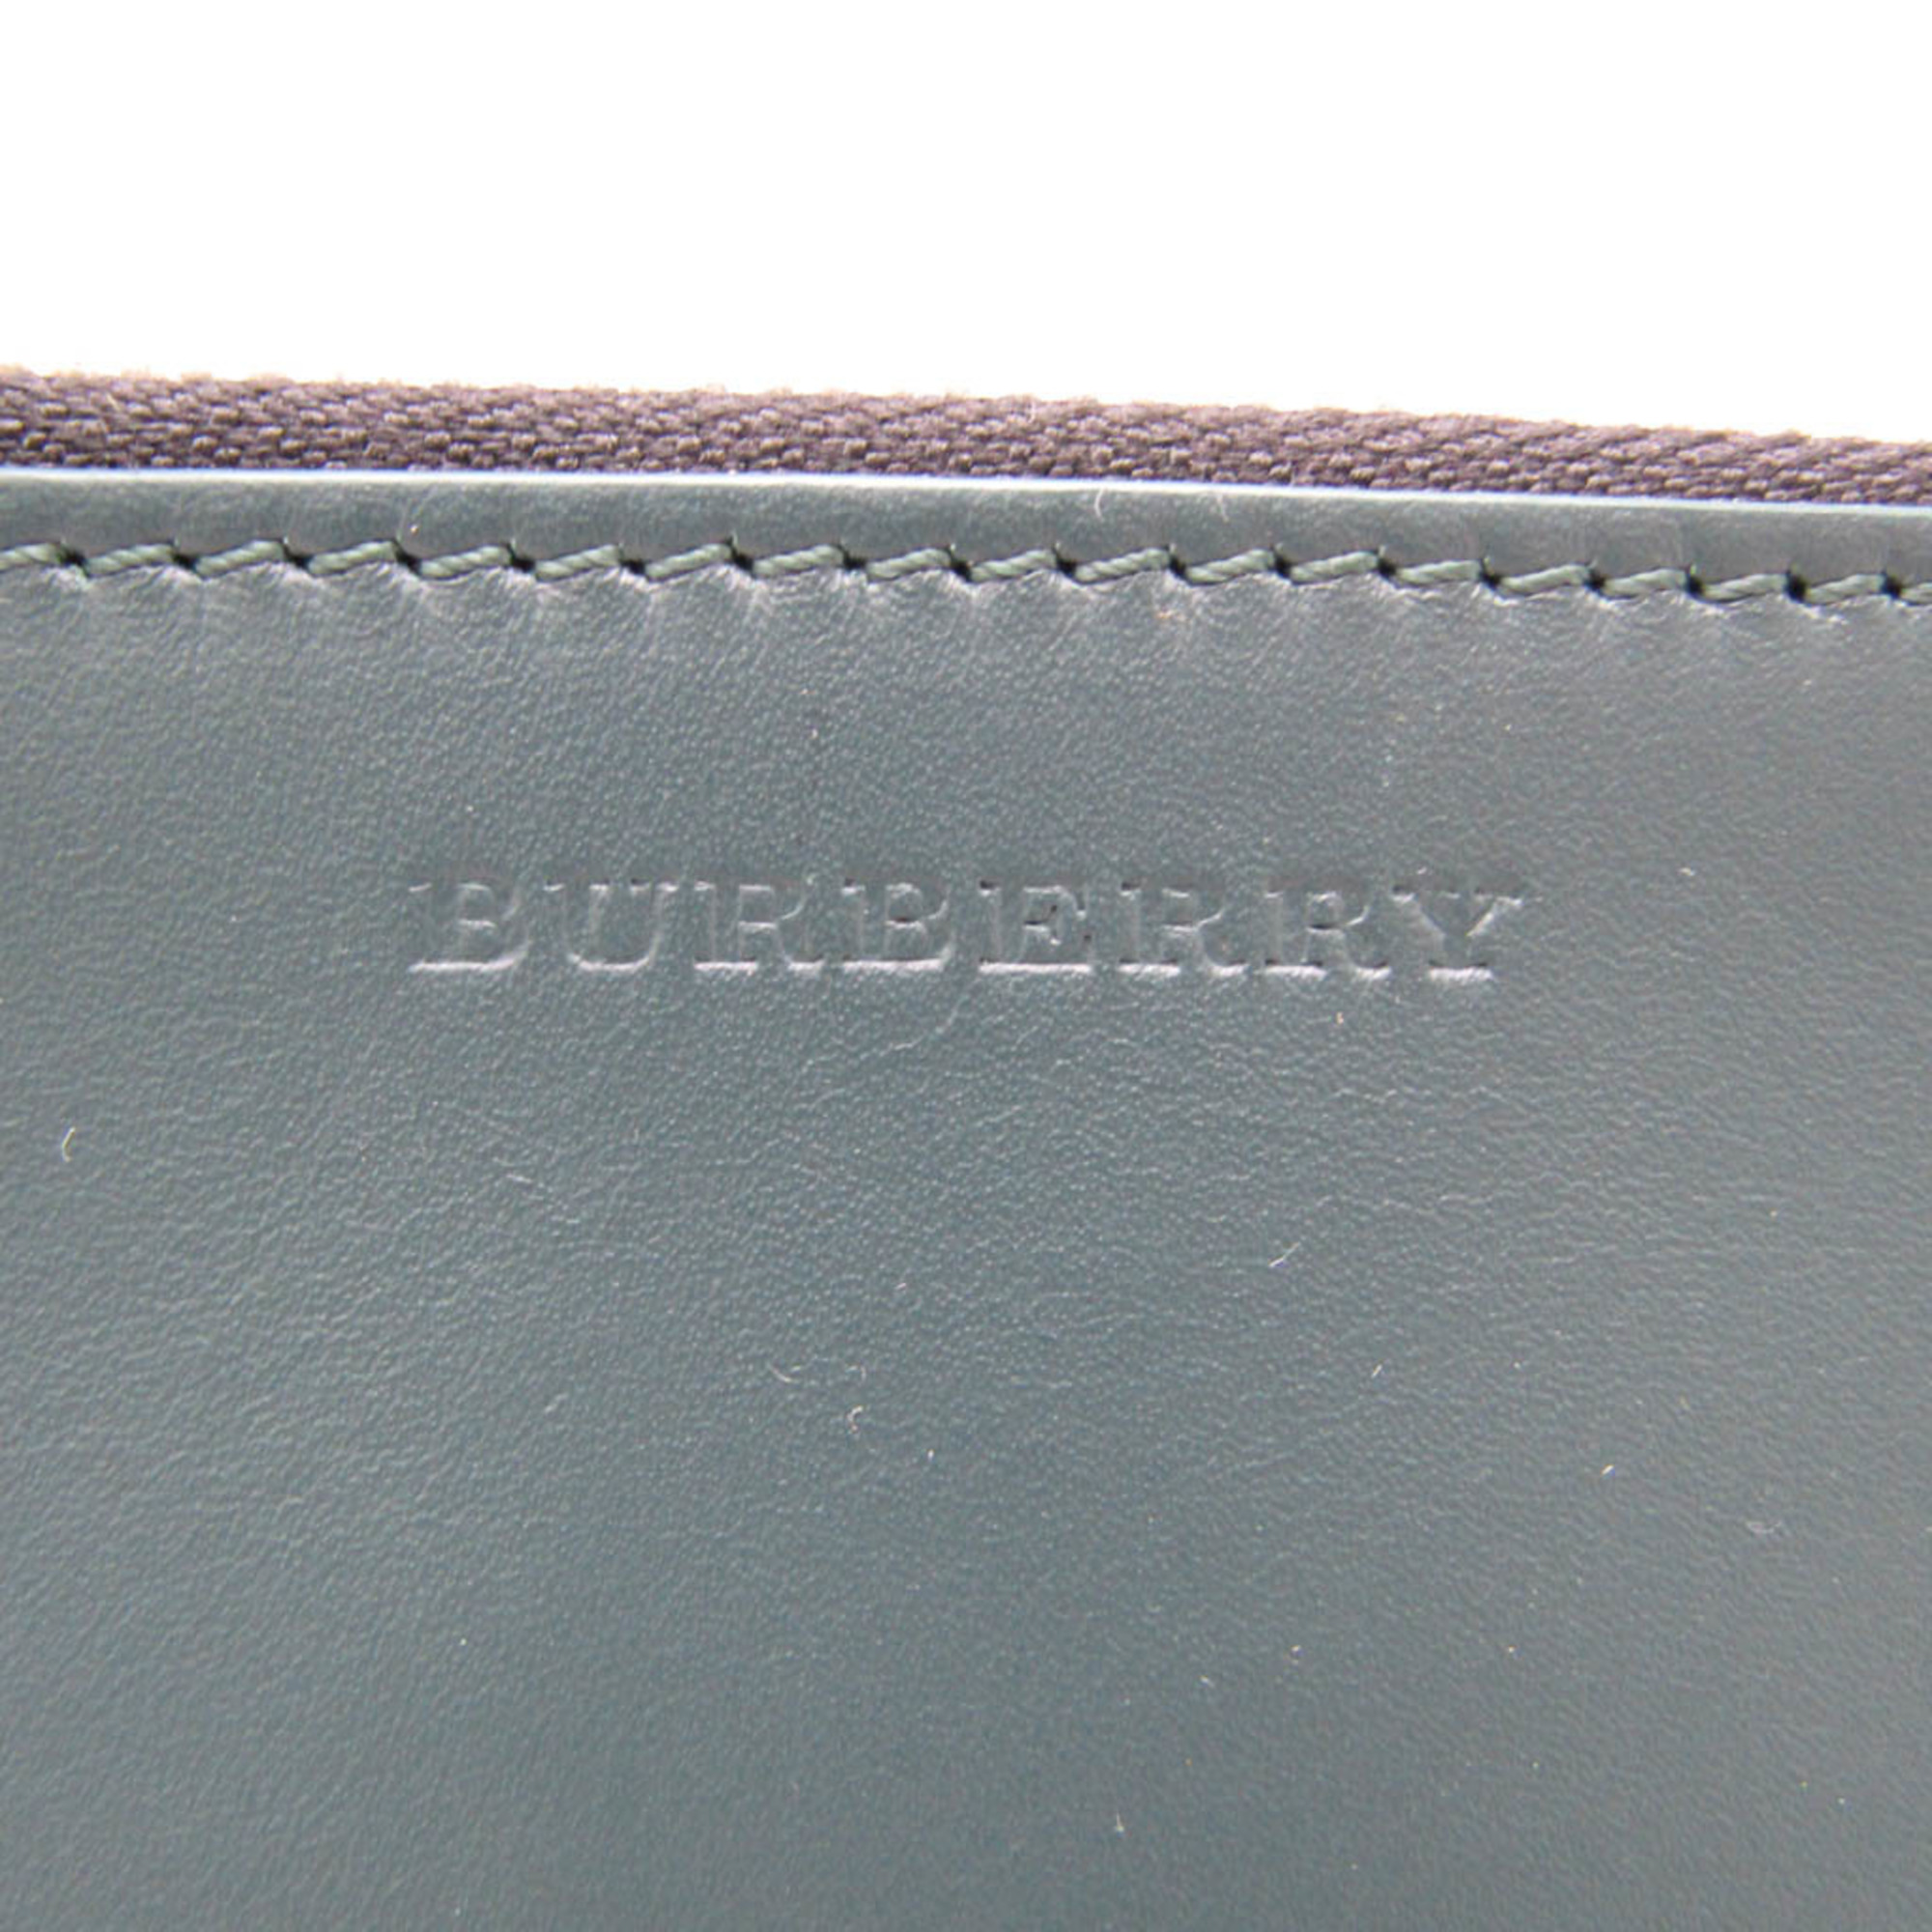 Burberry L-shaped Zipper Mini Men's Leather Clutch Bag Dark Green